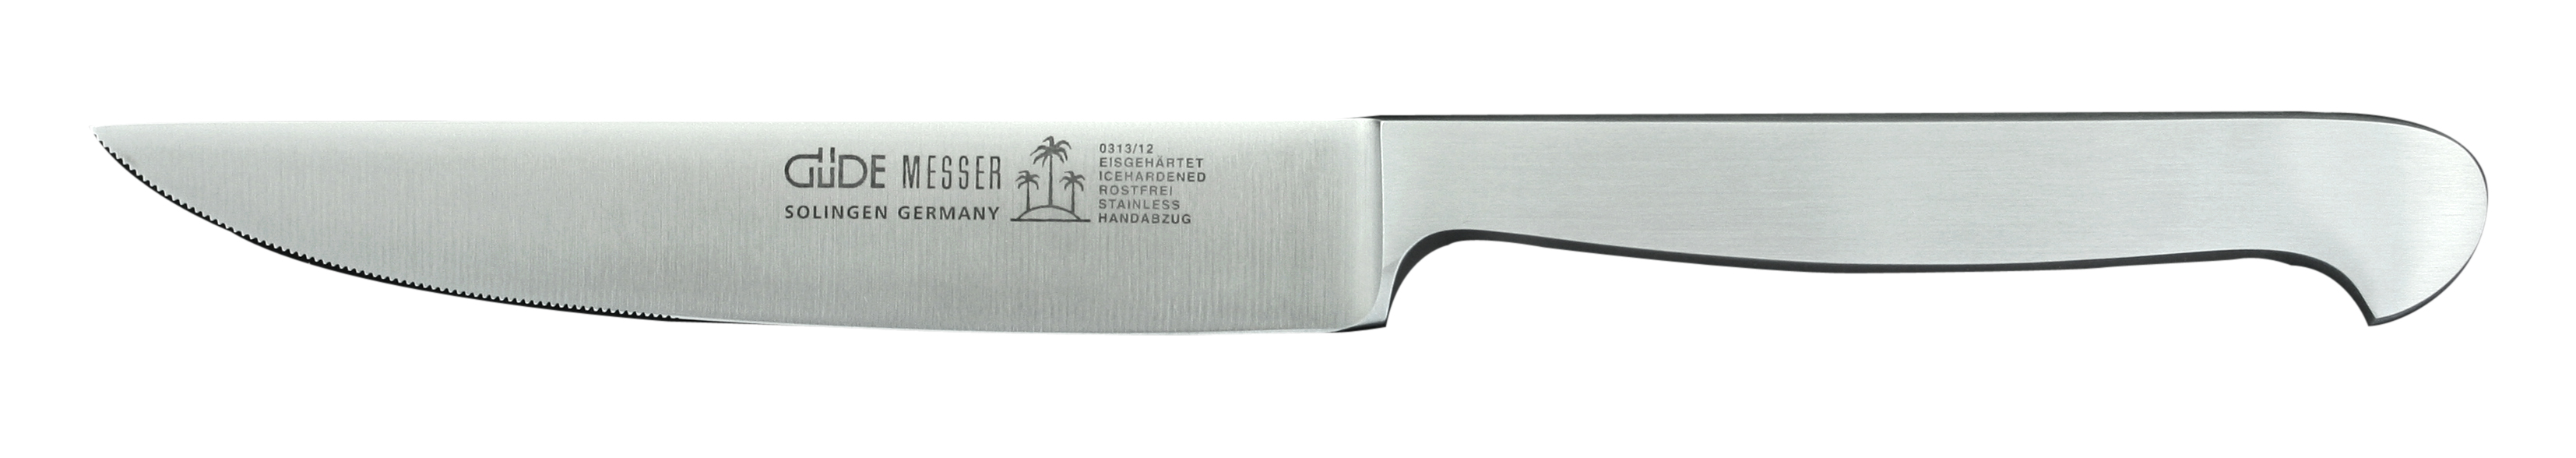 Güde Kappa Steakmesser 12 cm / Klinge und Griff aus CVM-Stahl